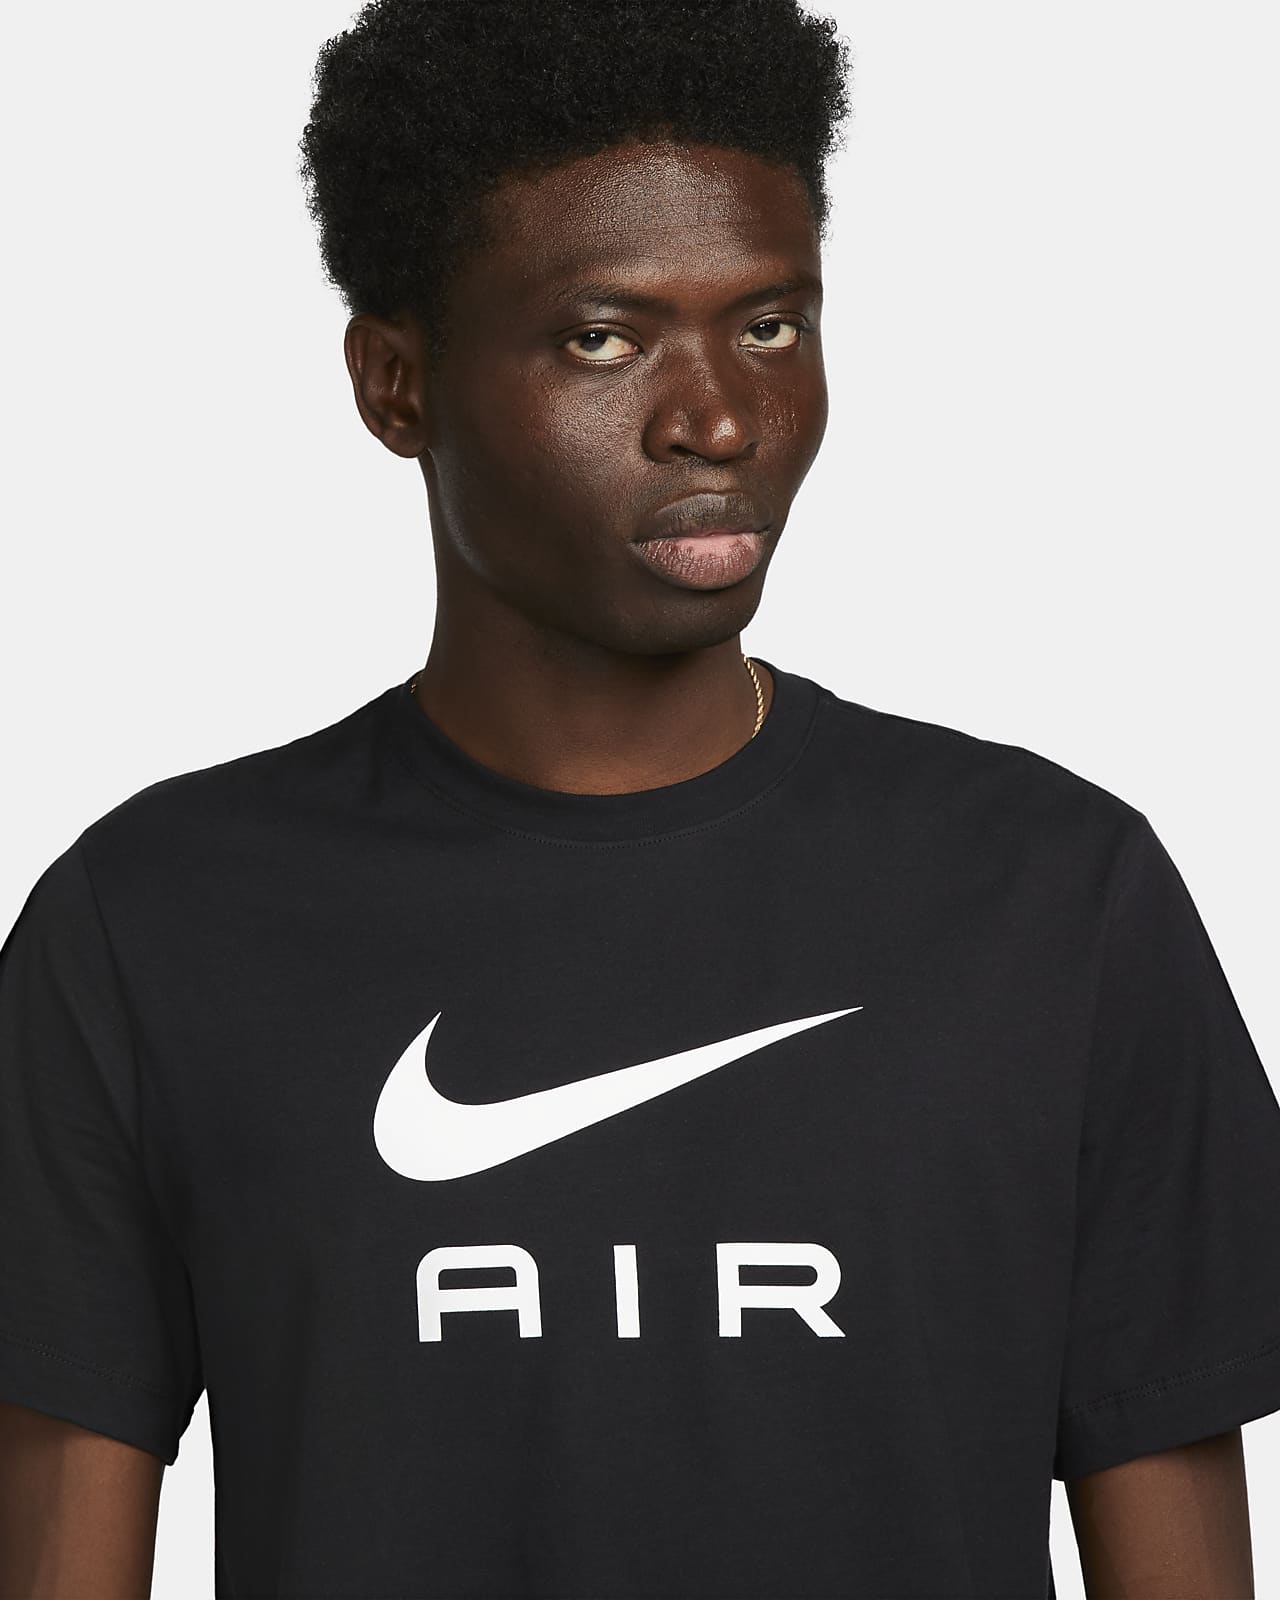 Nike Sportswear Men's T-Shirt. Nike DK